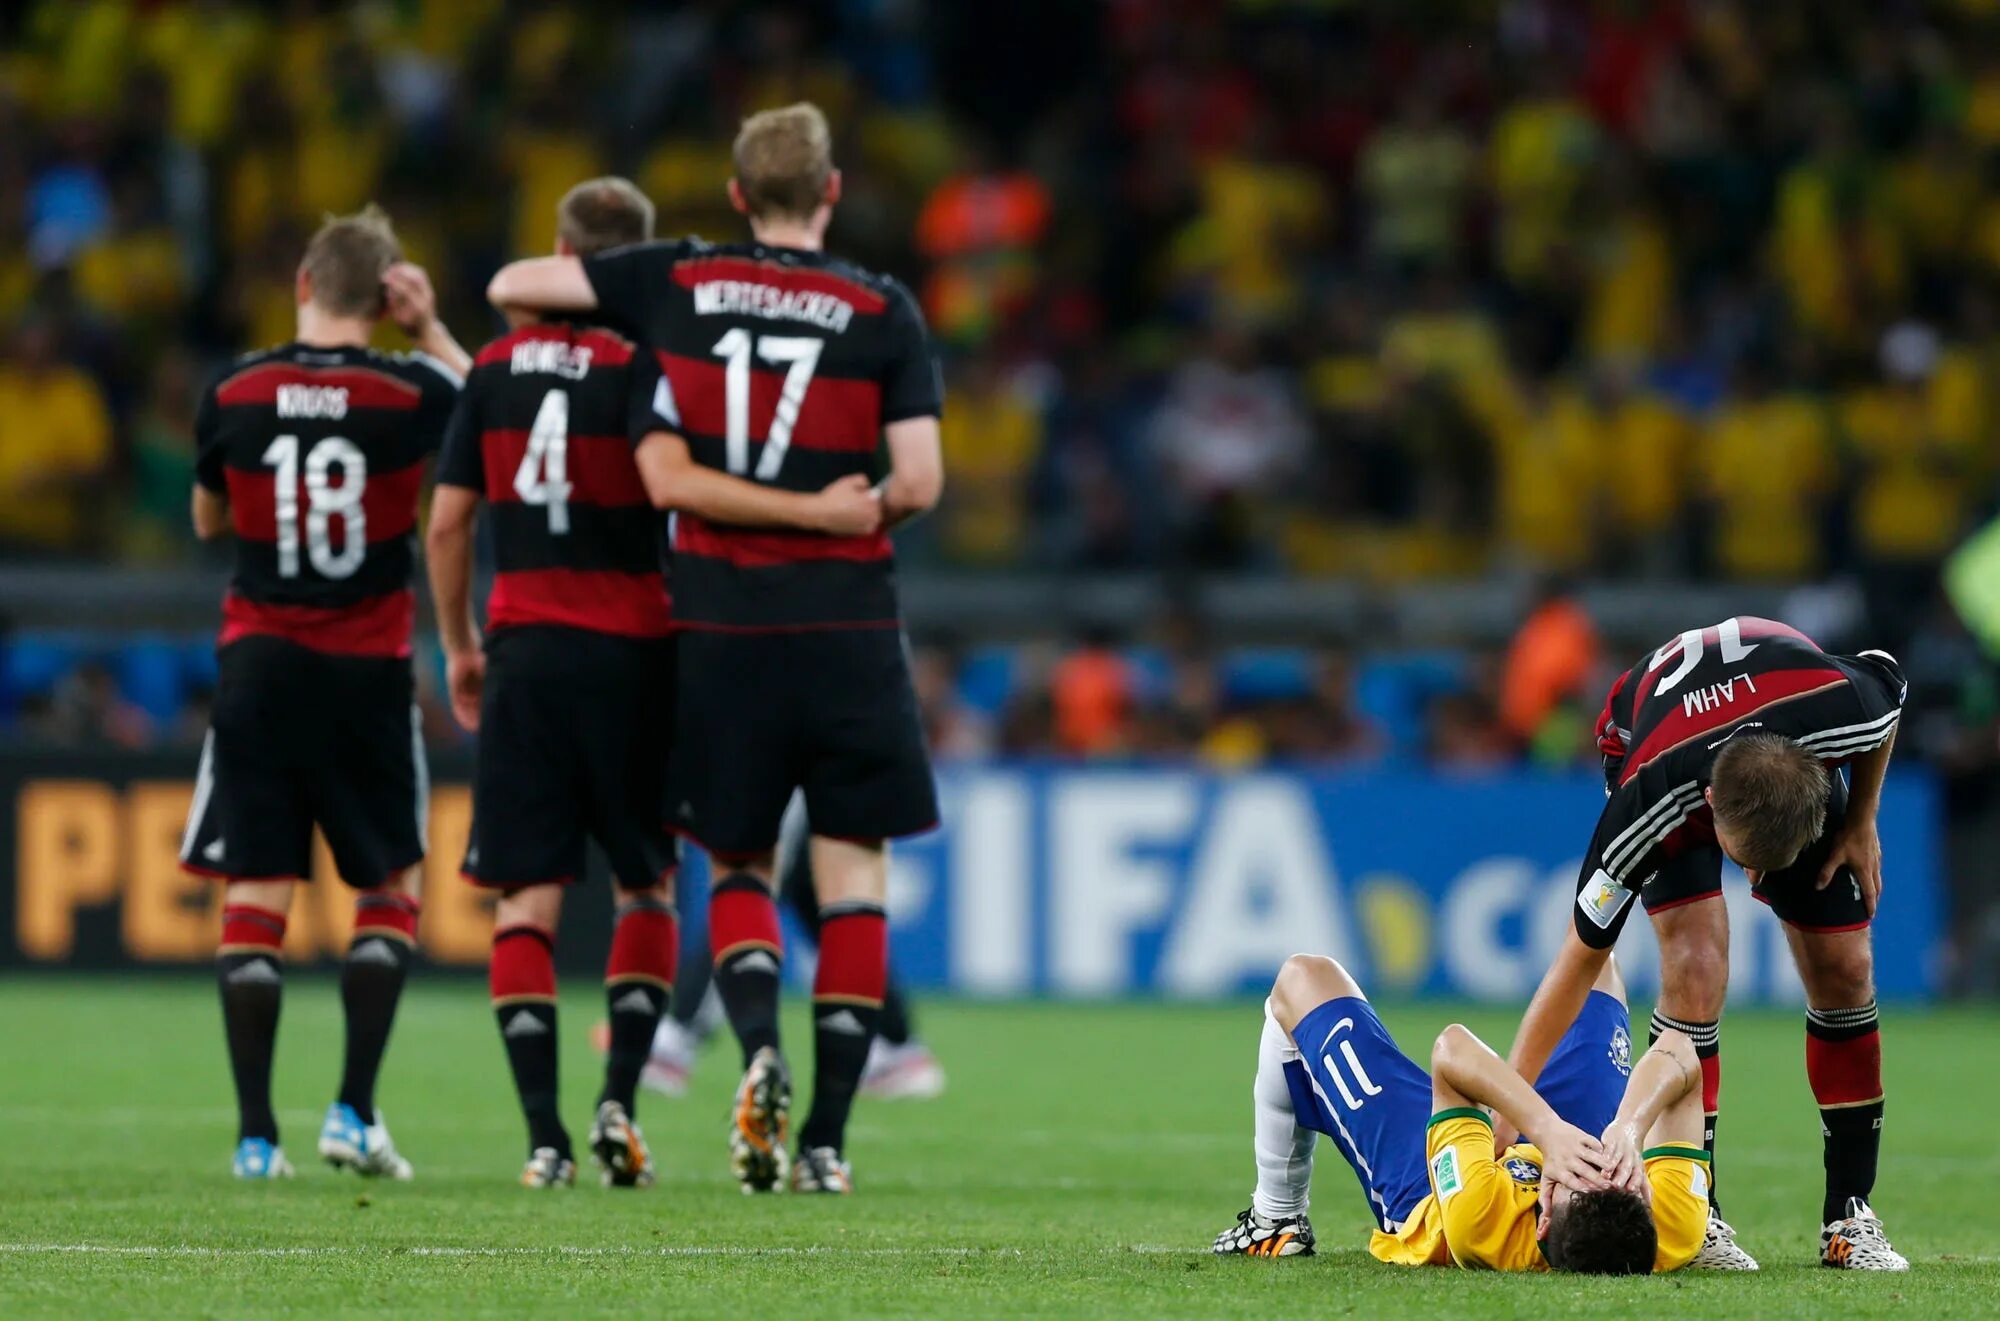 Германия 1 июля. Бразилия Германия 1-7. 2014 Год полуфинал Германия Бразилия. Бразилия проиграла Германии 1-7. ЧМ 2014 Германия Бразилия 7:1.